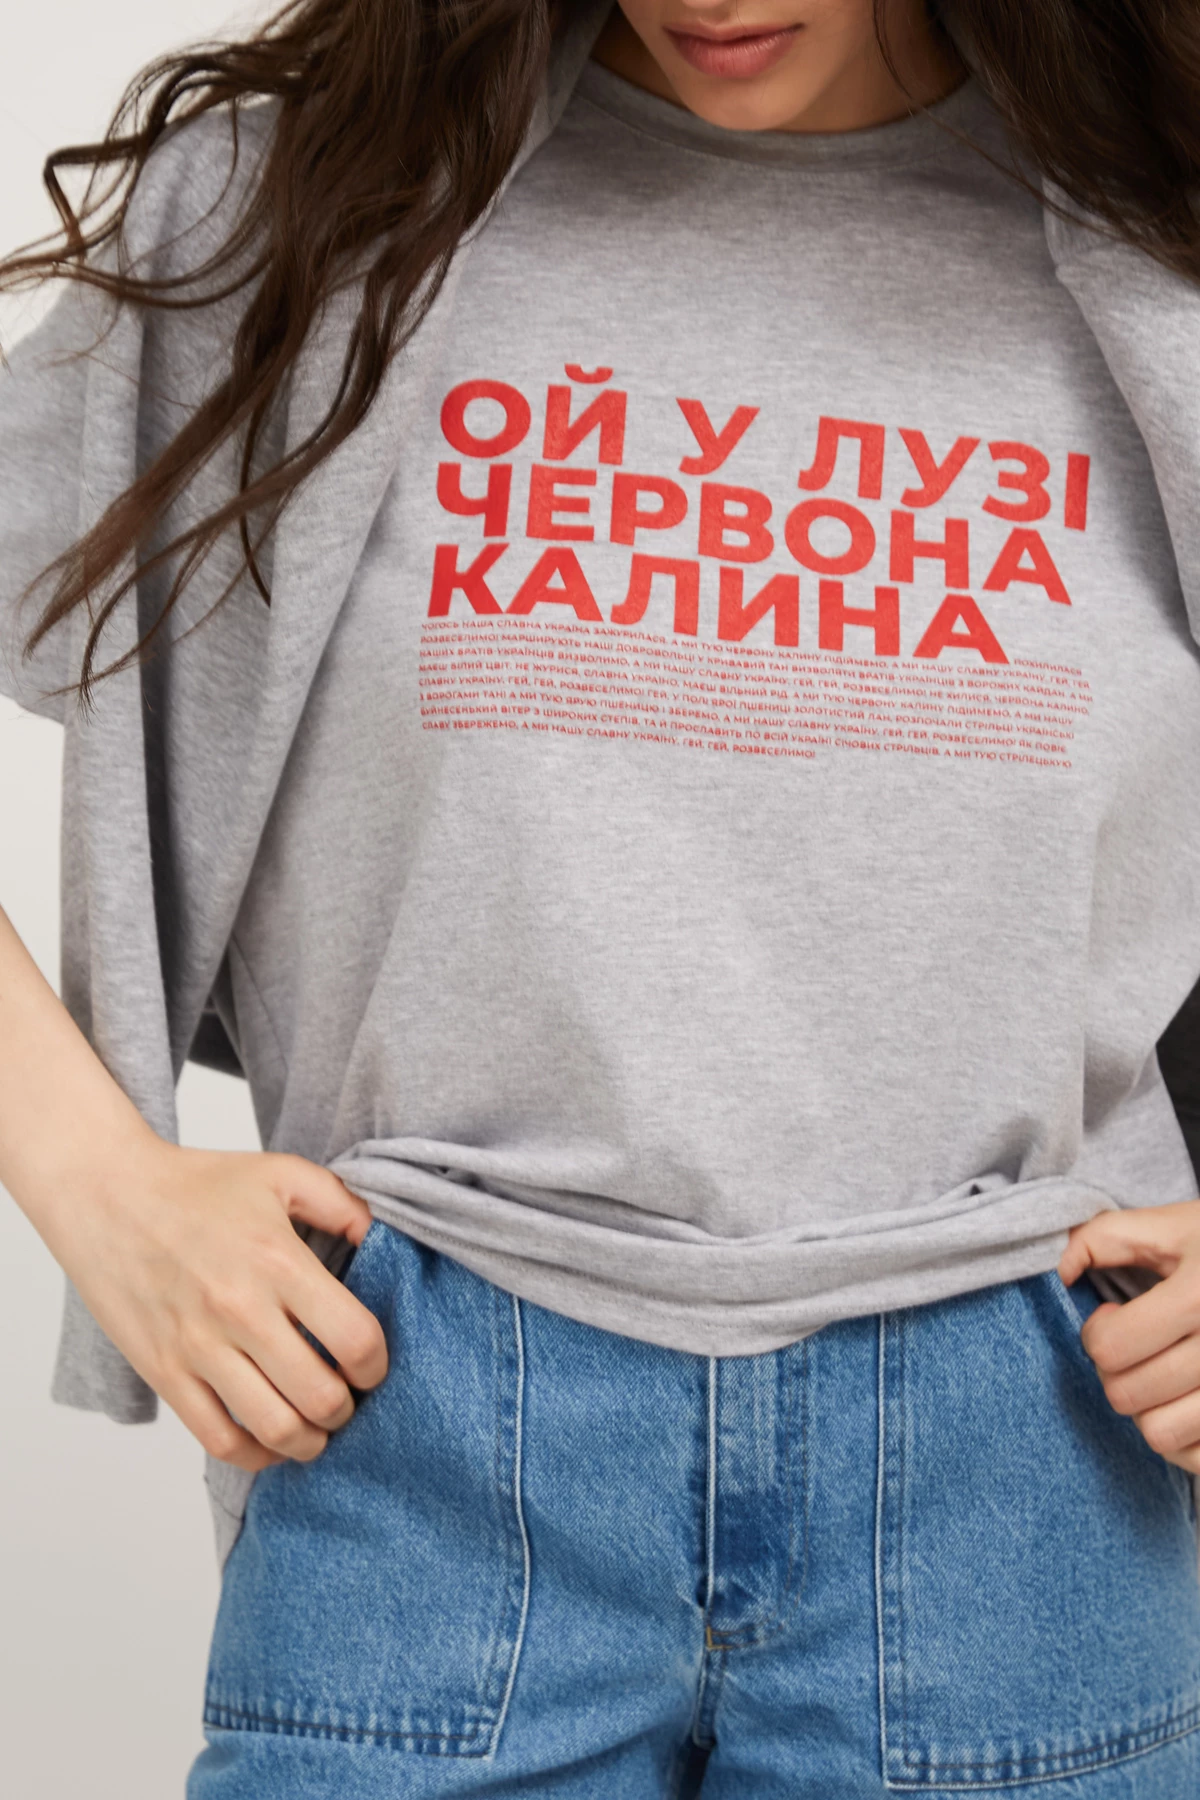  Grey-melange unisex T-shirt "Chervona kalyna", photo 5